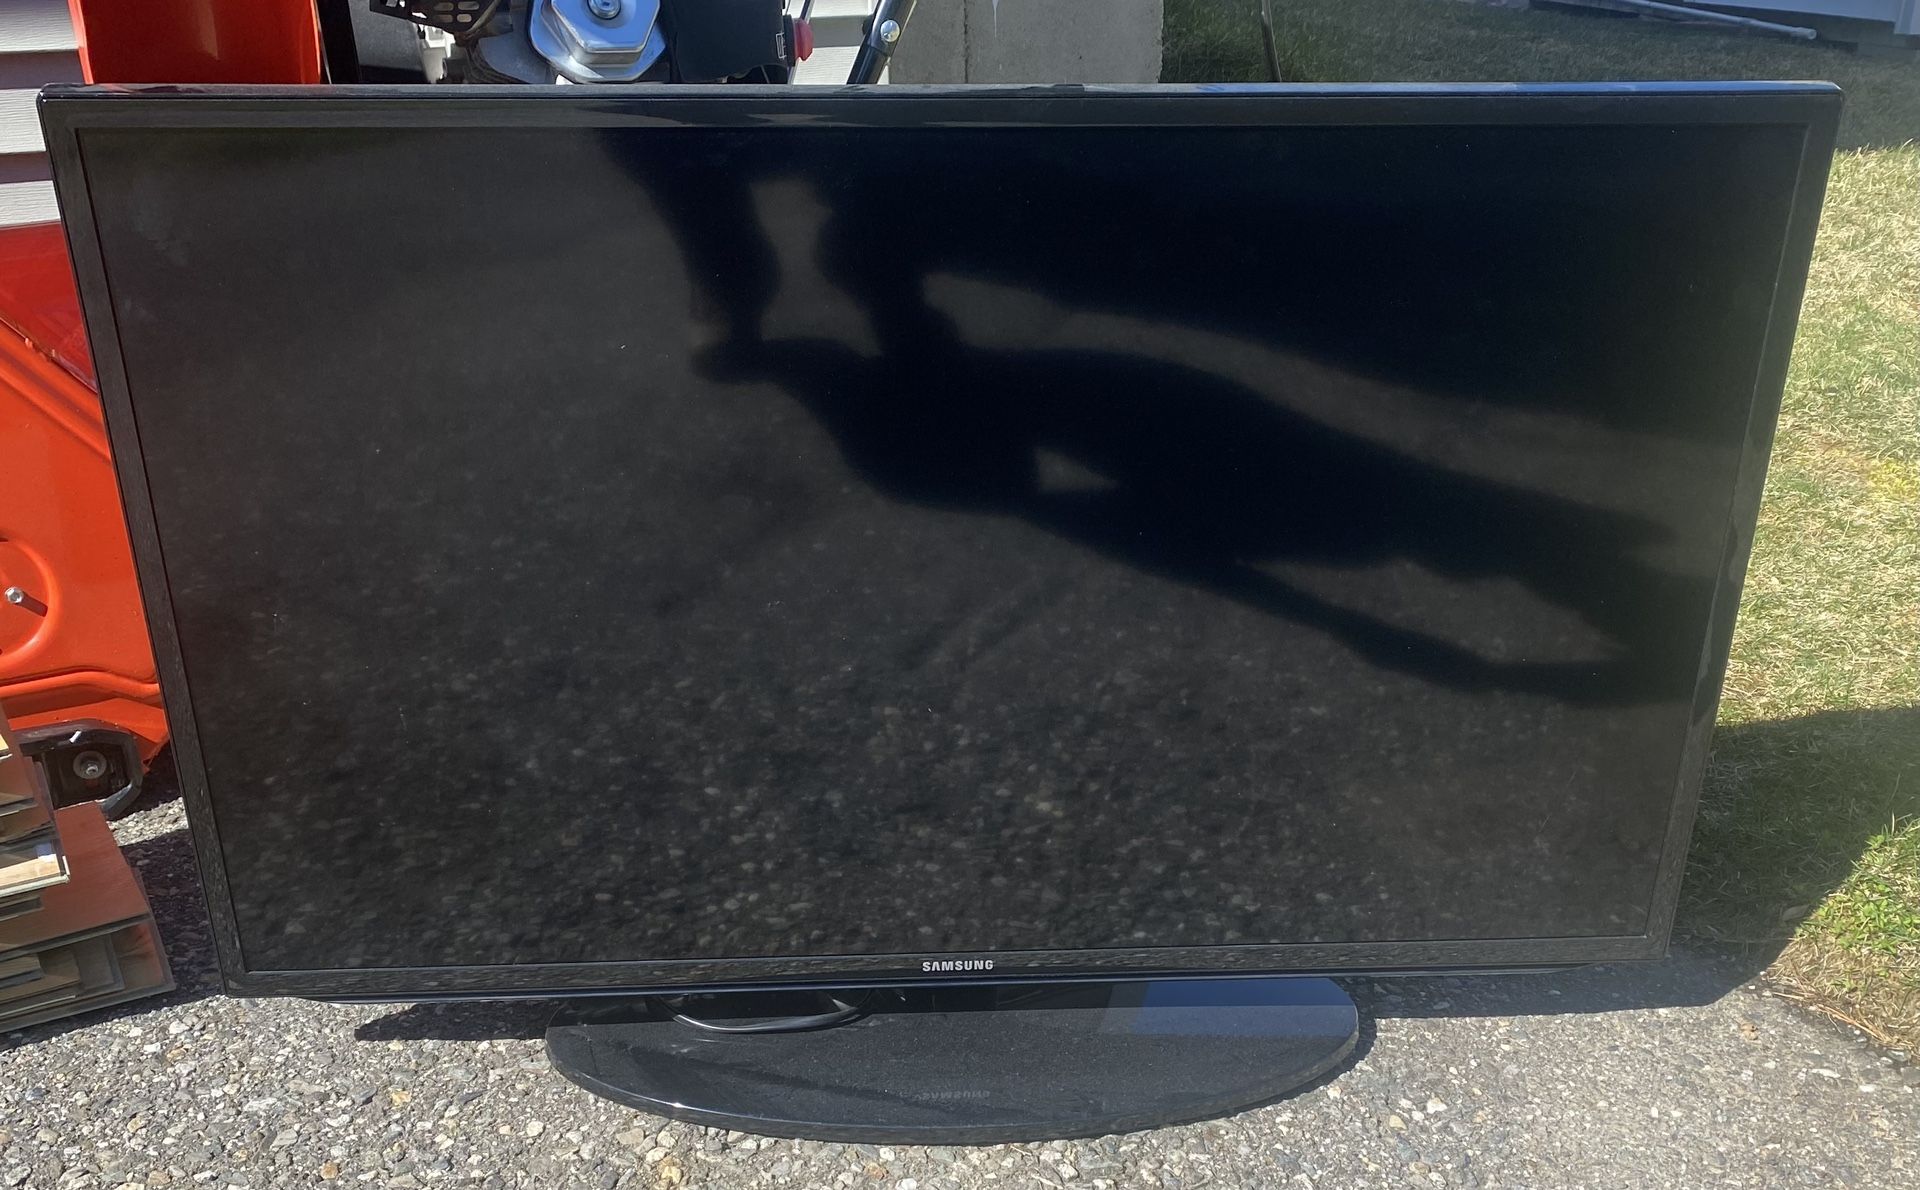 Samsung 40” flatscreen TV Model # UN40H5203AF “Free”